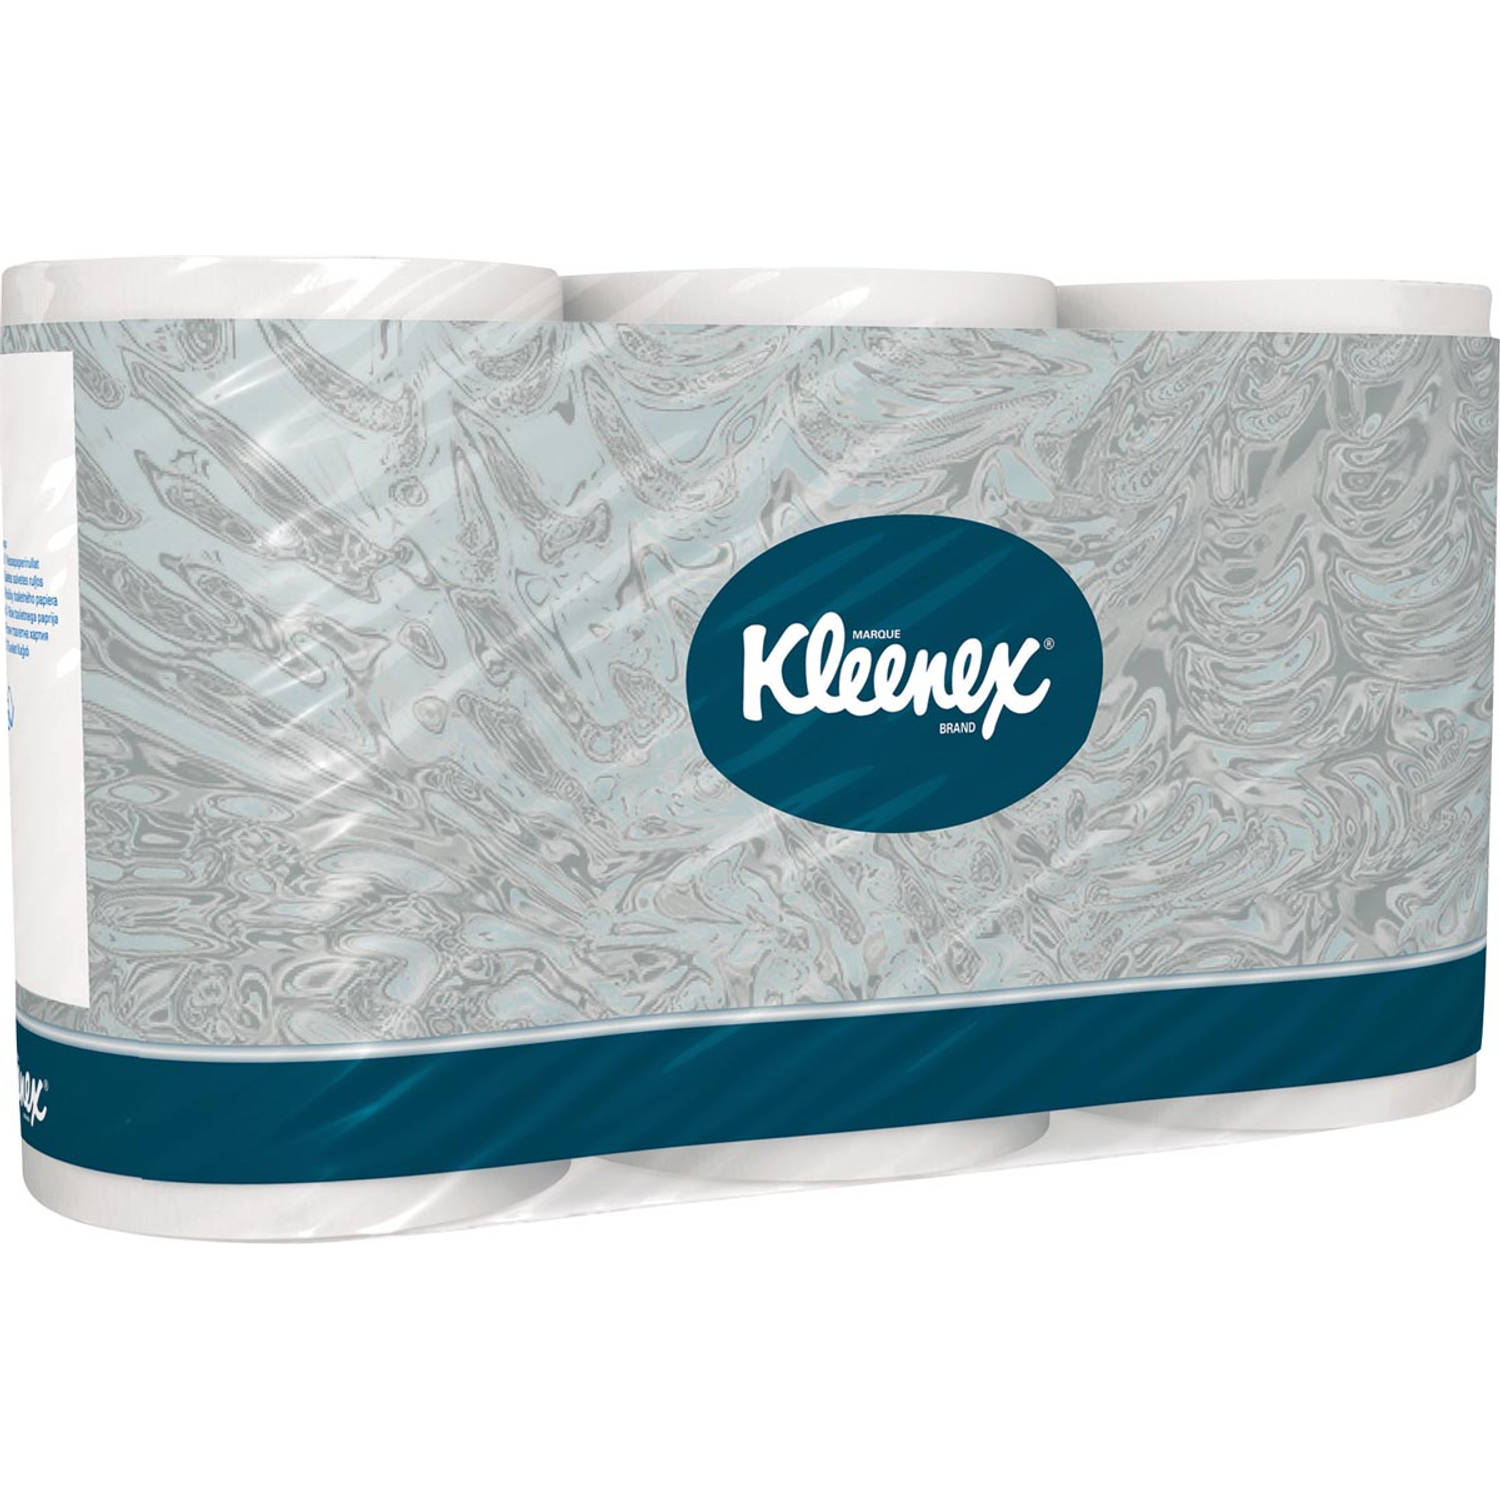 Kleenex toiletpapier 3-laags, pak van 6 rollen, 350 vellen per rol, wit